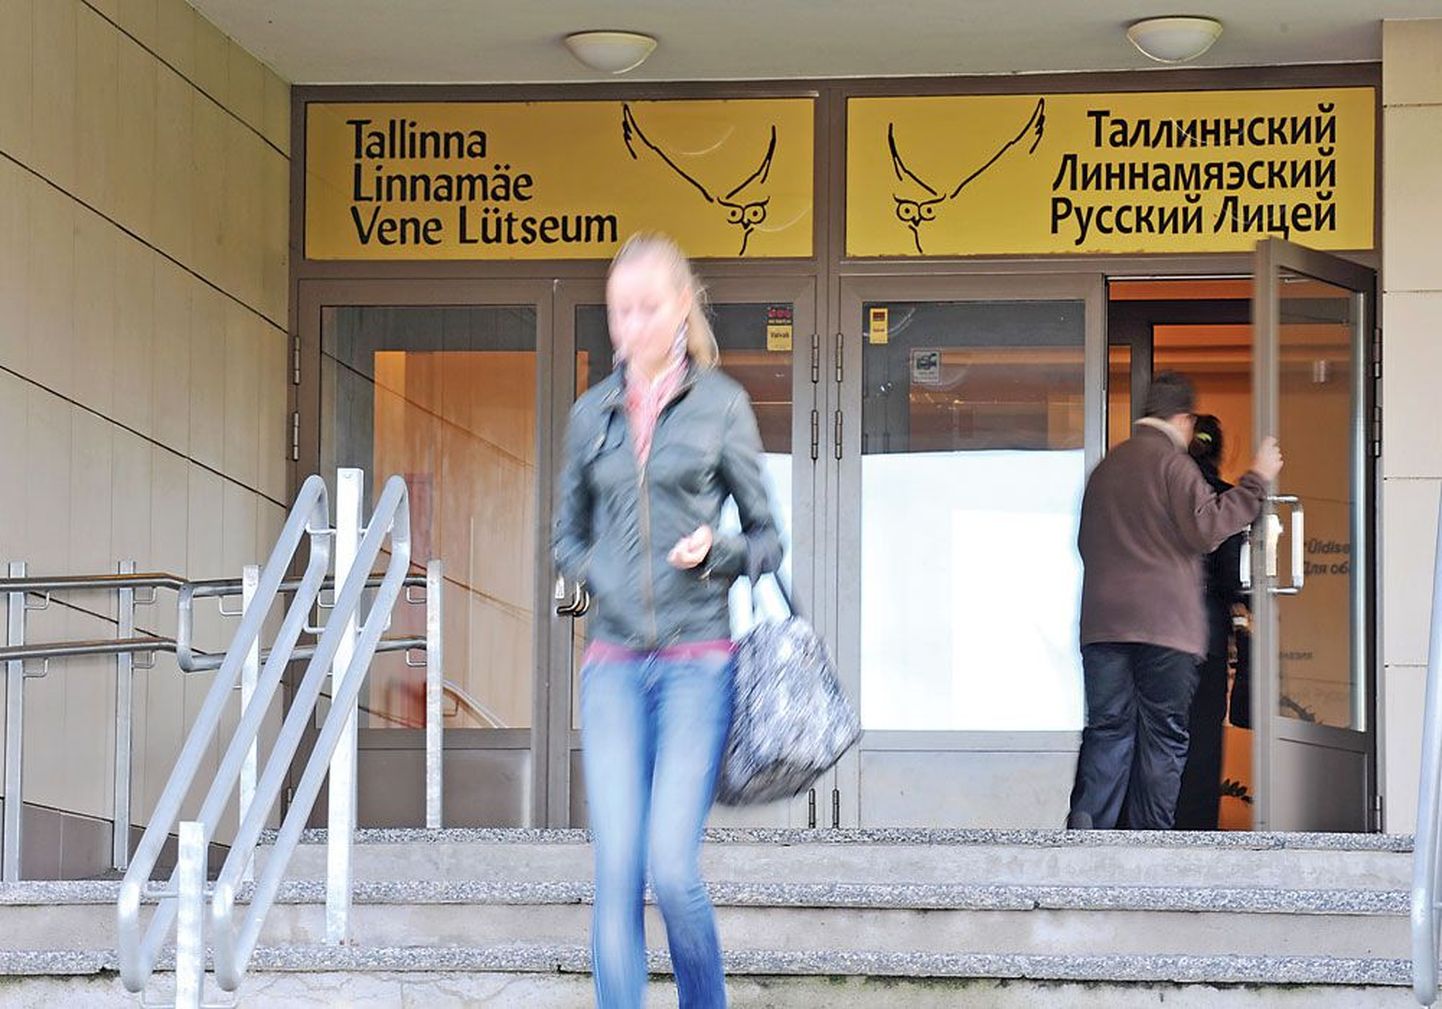 Министерство образования и науки отказало Таллиннскому Линнамяэскому русскому лицею в получении статуса частной муниципальной школы.